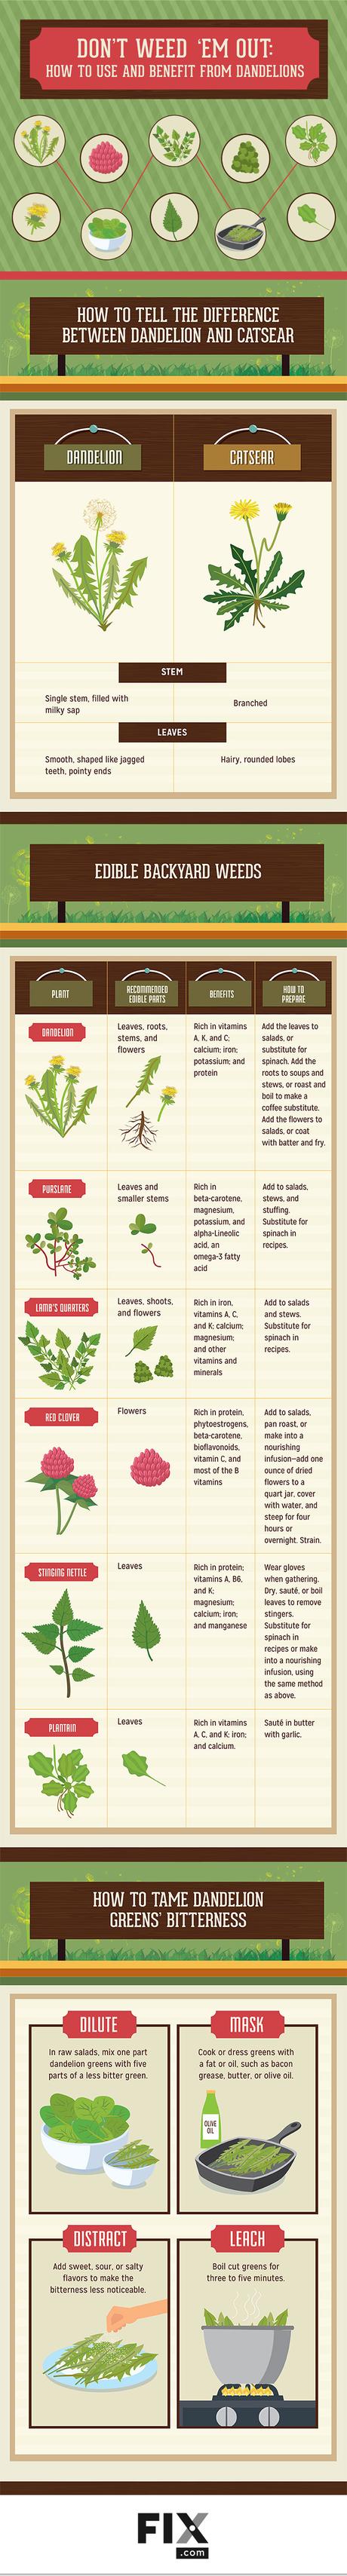 Benefits of Dandelions and other Garden Weeds